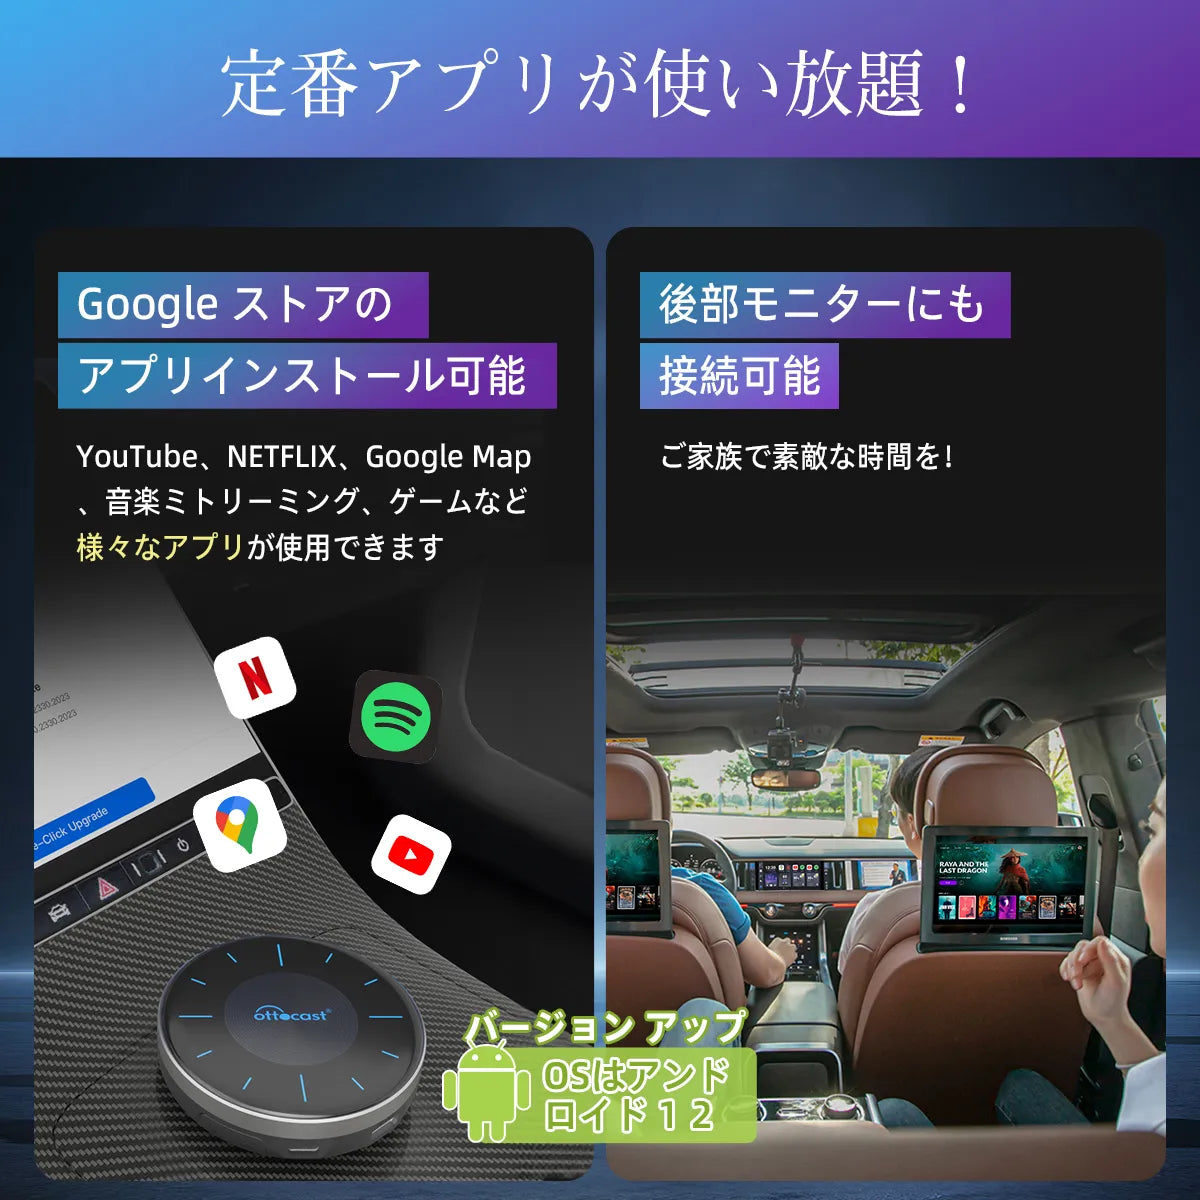 💥新製品-公式先行販売💥Ottocast PICASOU 3 CarPlay AI Box